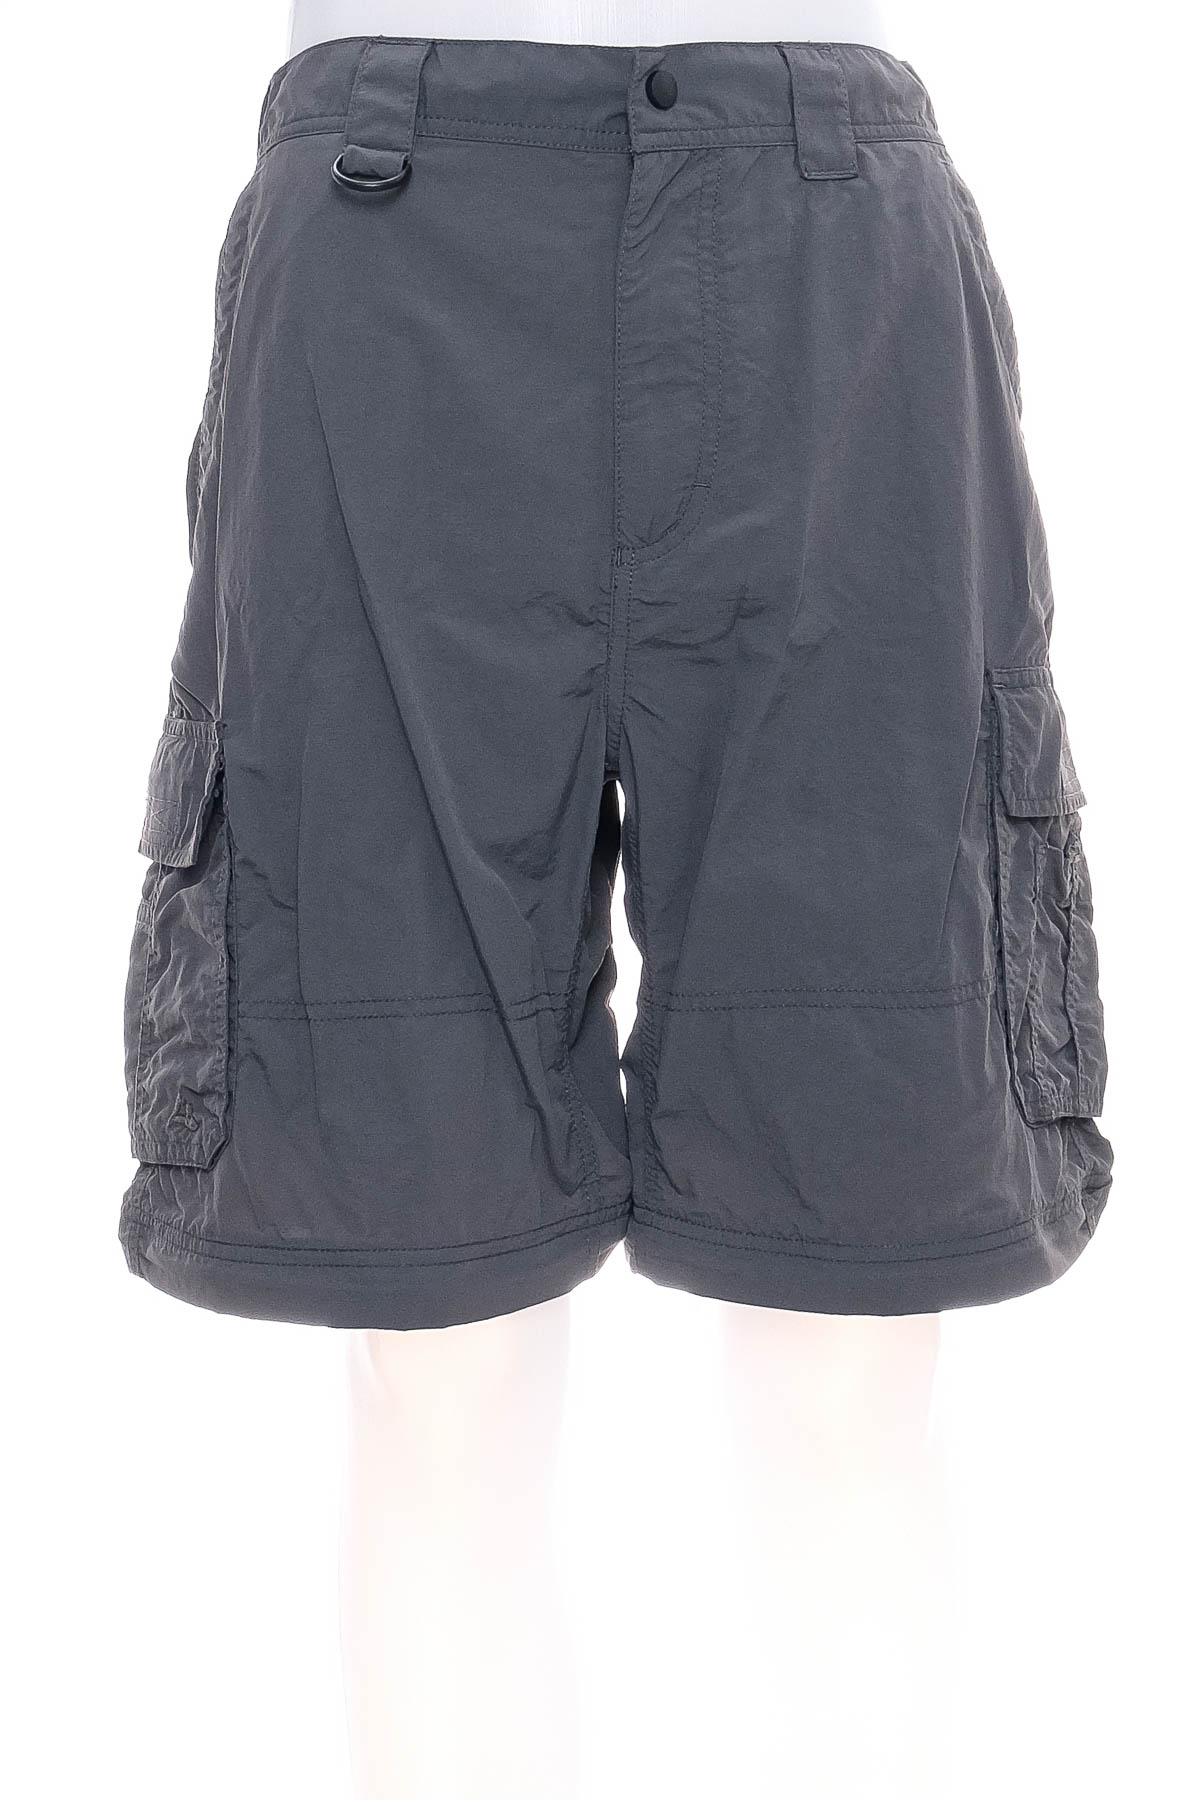 Men's shorts - Alpine Design - 0